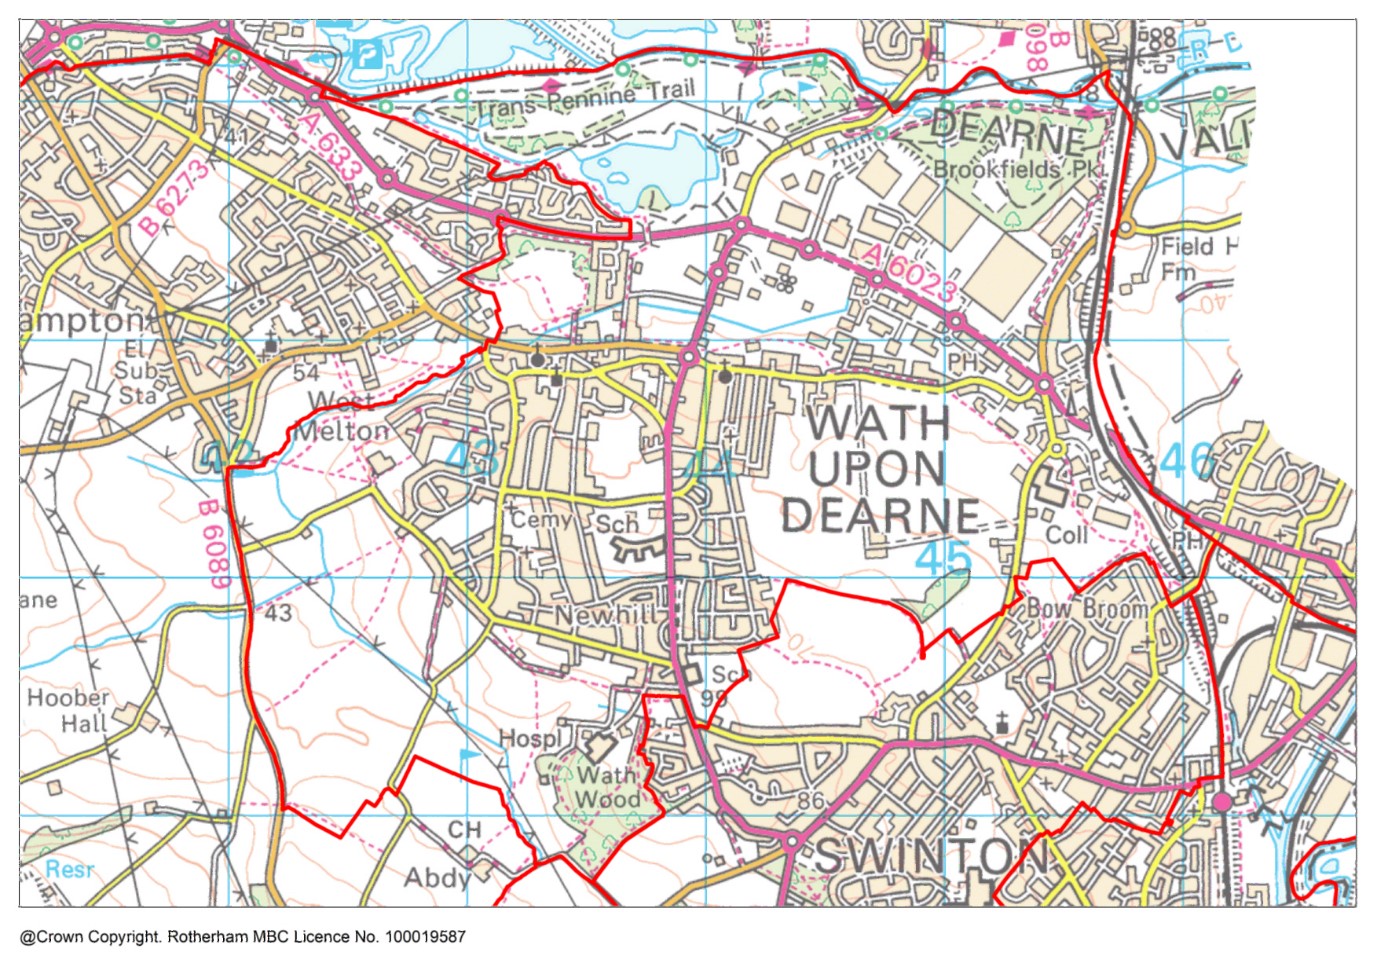 Wath ward map